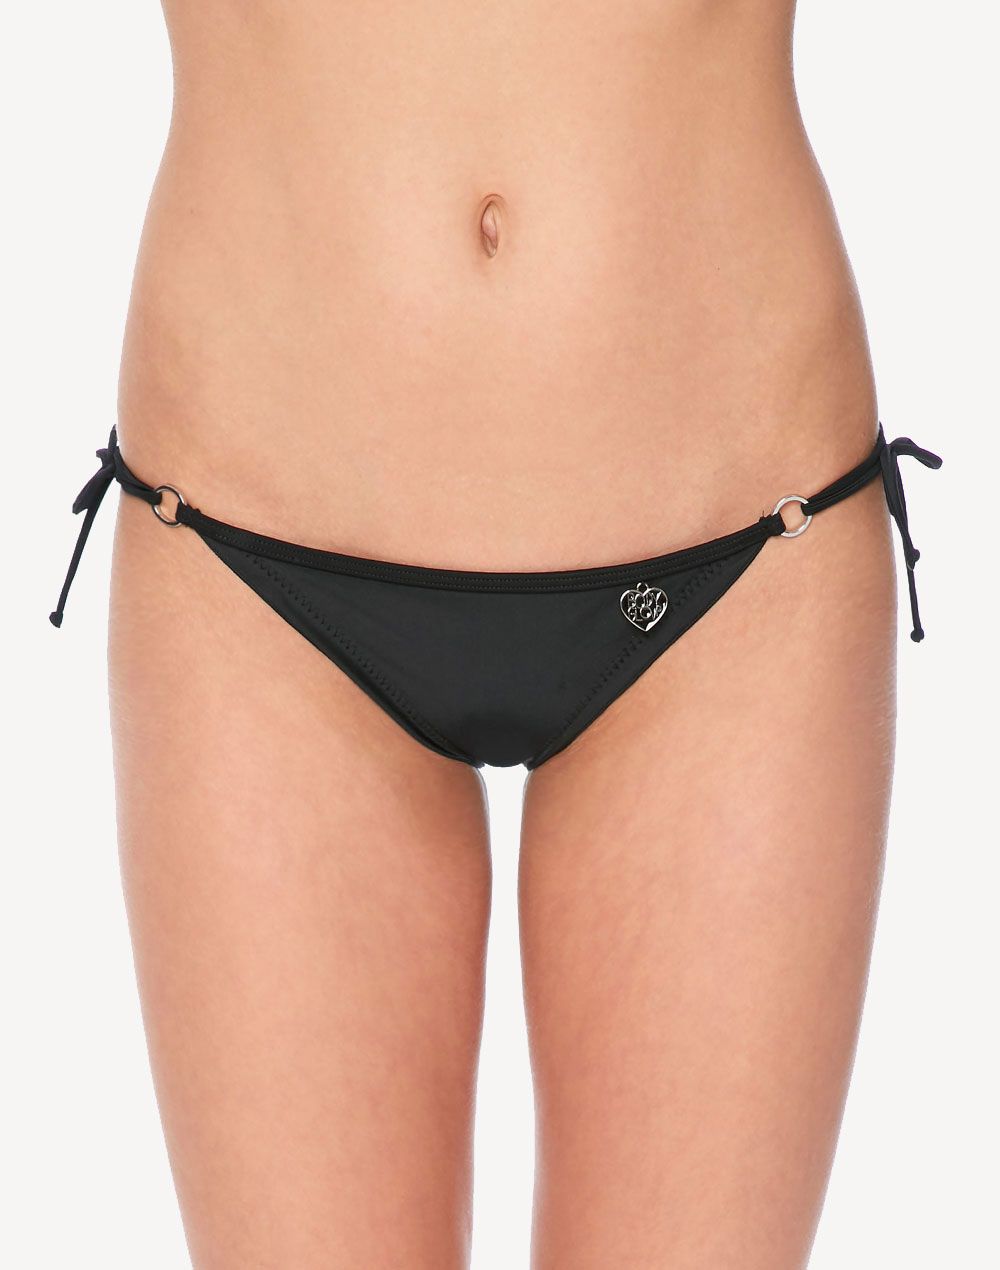 Body Glove Smoothies Brasilia Bikini Bottom